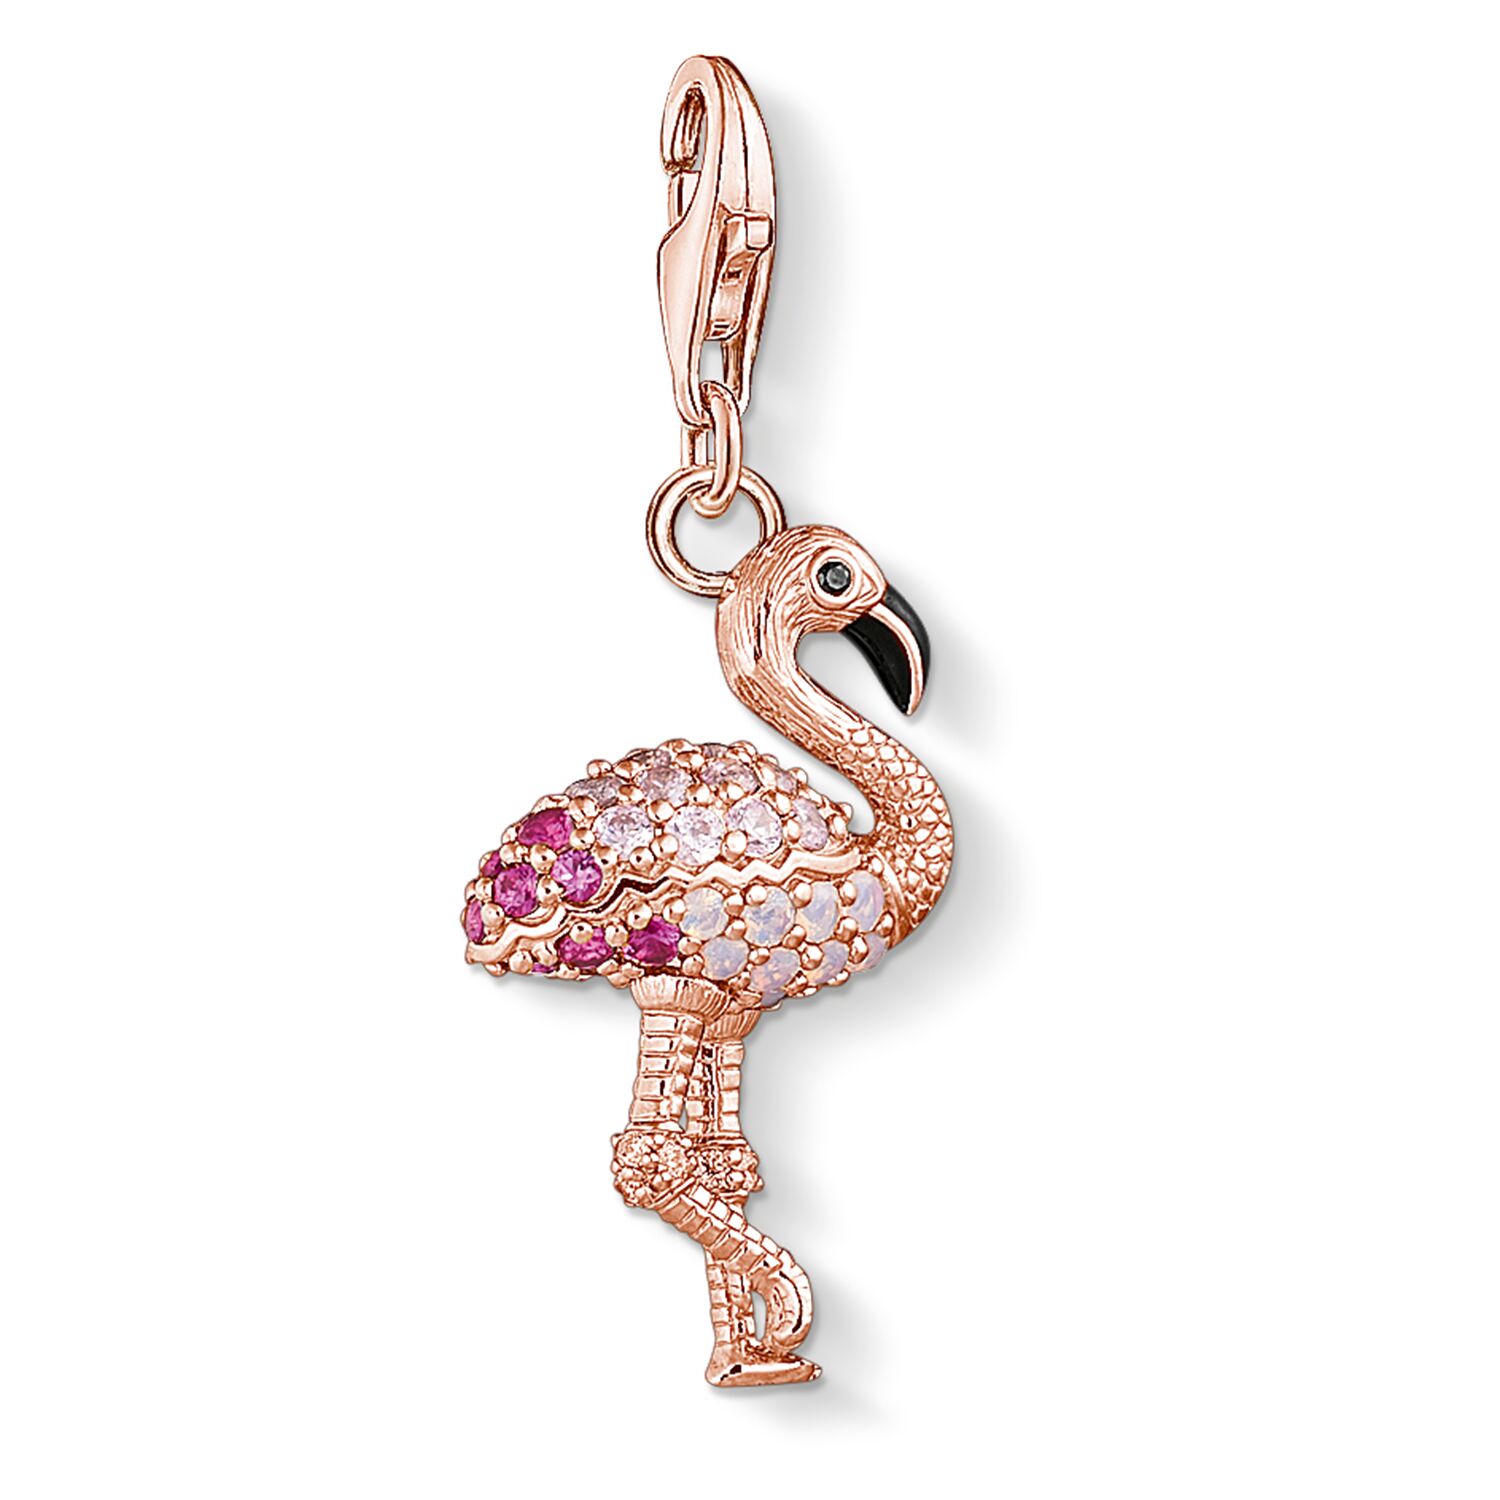 Thomas Sabo Charm Flamingo günstig kaufen bei Juwelierwelt.de © ★ Gratisversand ★ Paypal ★ trusted shops ★ 10 Euro Gutschein ★